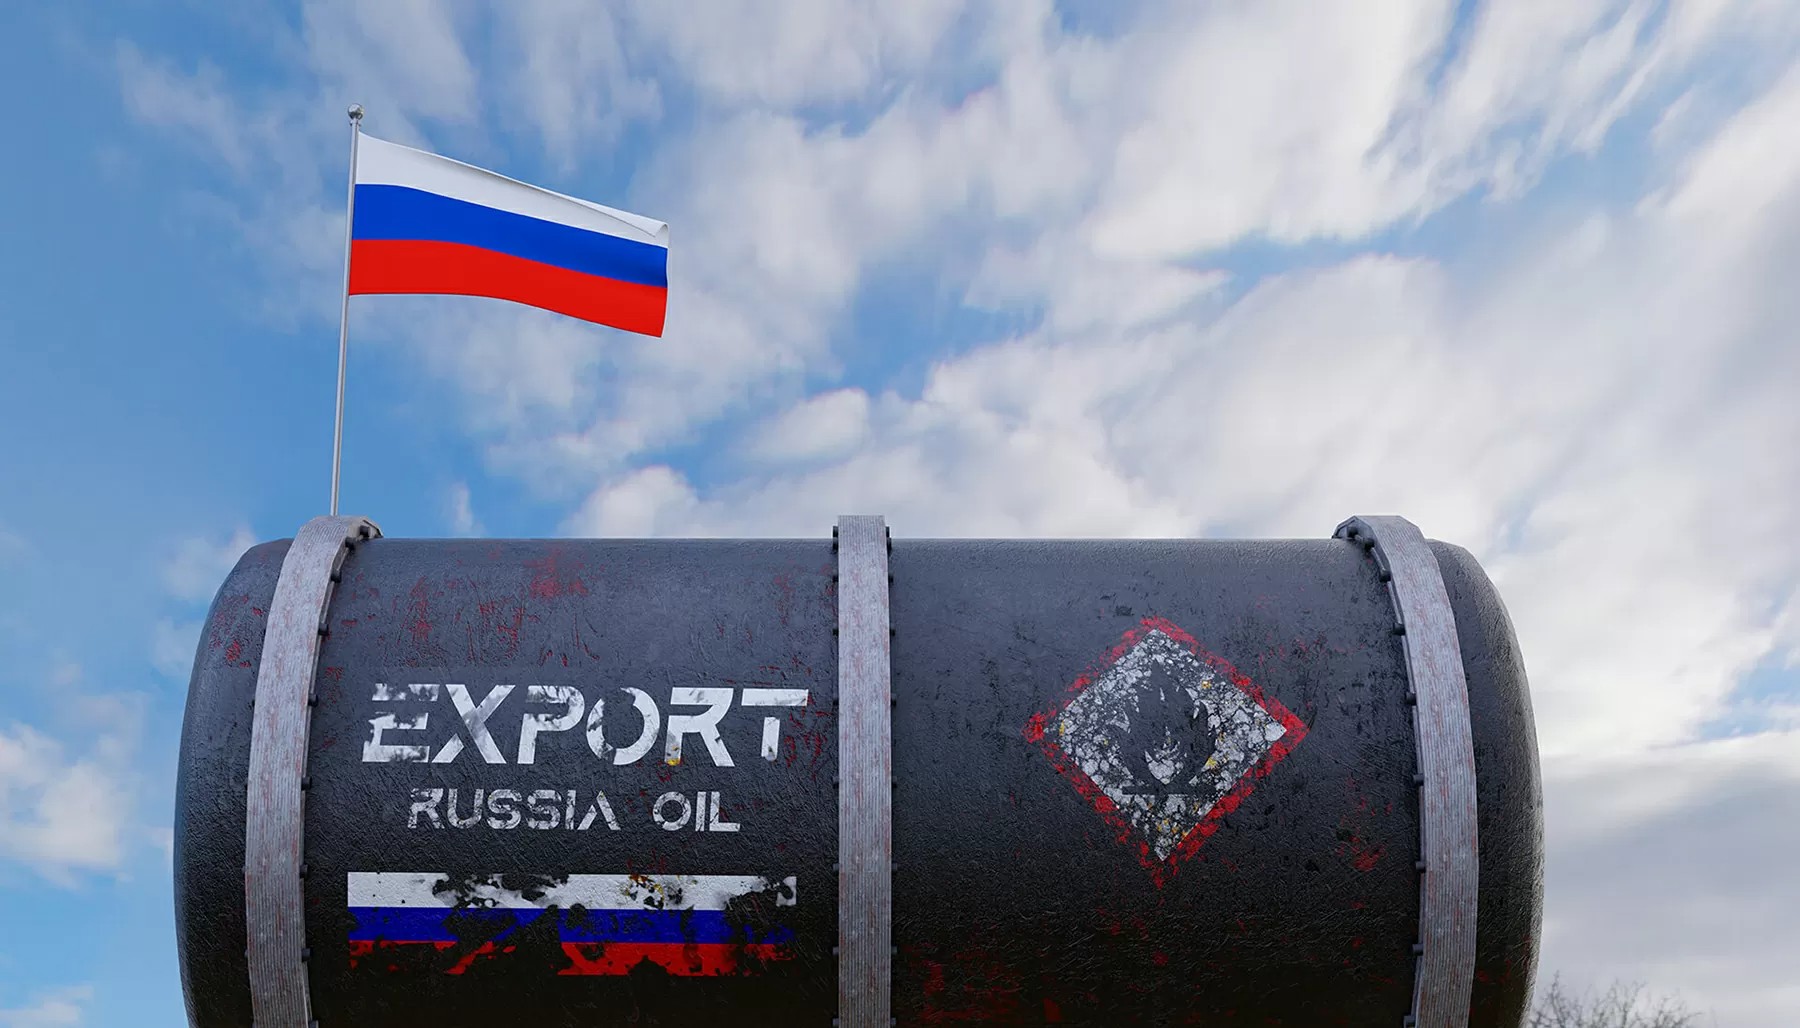 Δύο πρώην προφυλακισμένοι επιχειρηματίες, σε άλλες εποχές έκαστος, «πλούτισαν» διά μέσω της αγοραπωλησίας και μεταφοράς πετρελαίου από την Ρωσία προς τη Δύση και την Μέση Ανατολή…